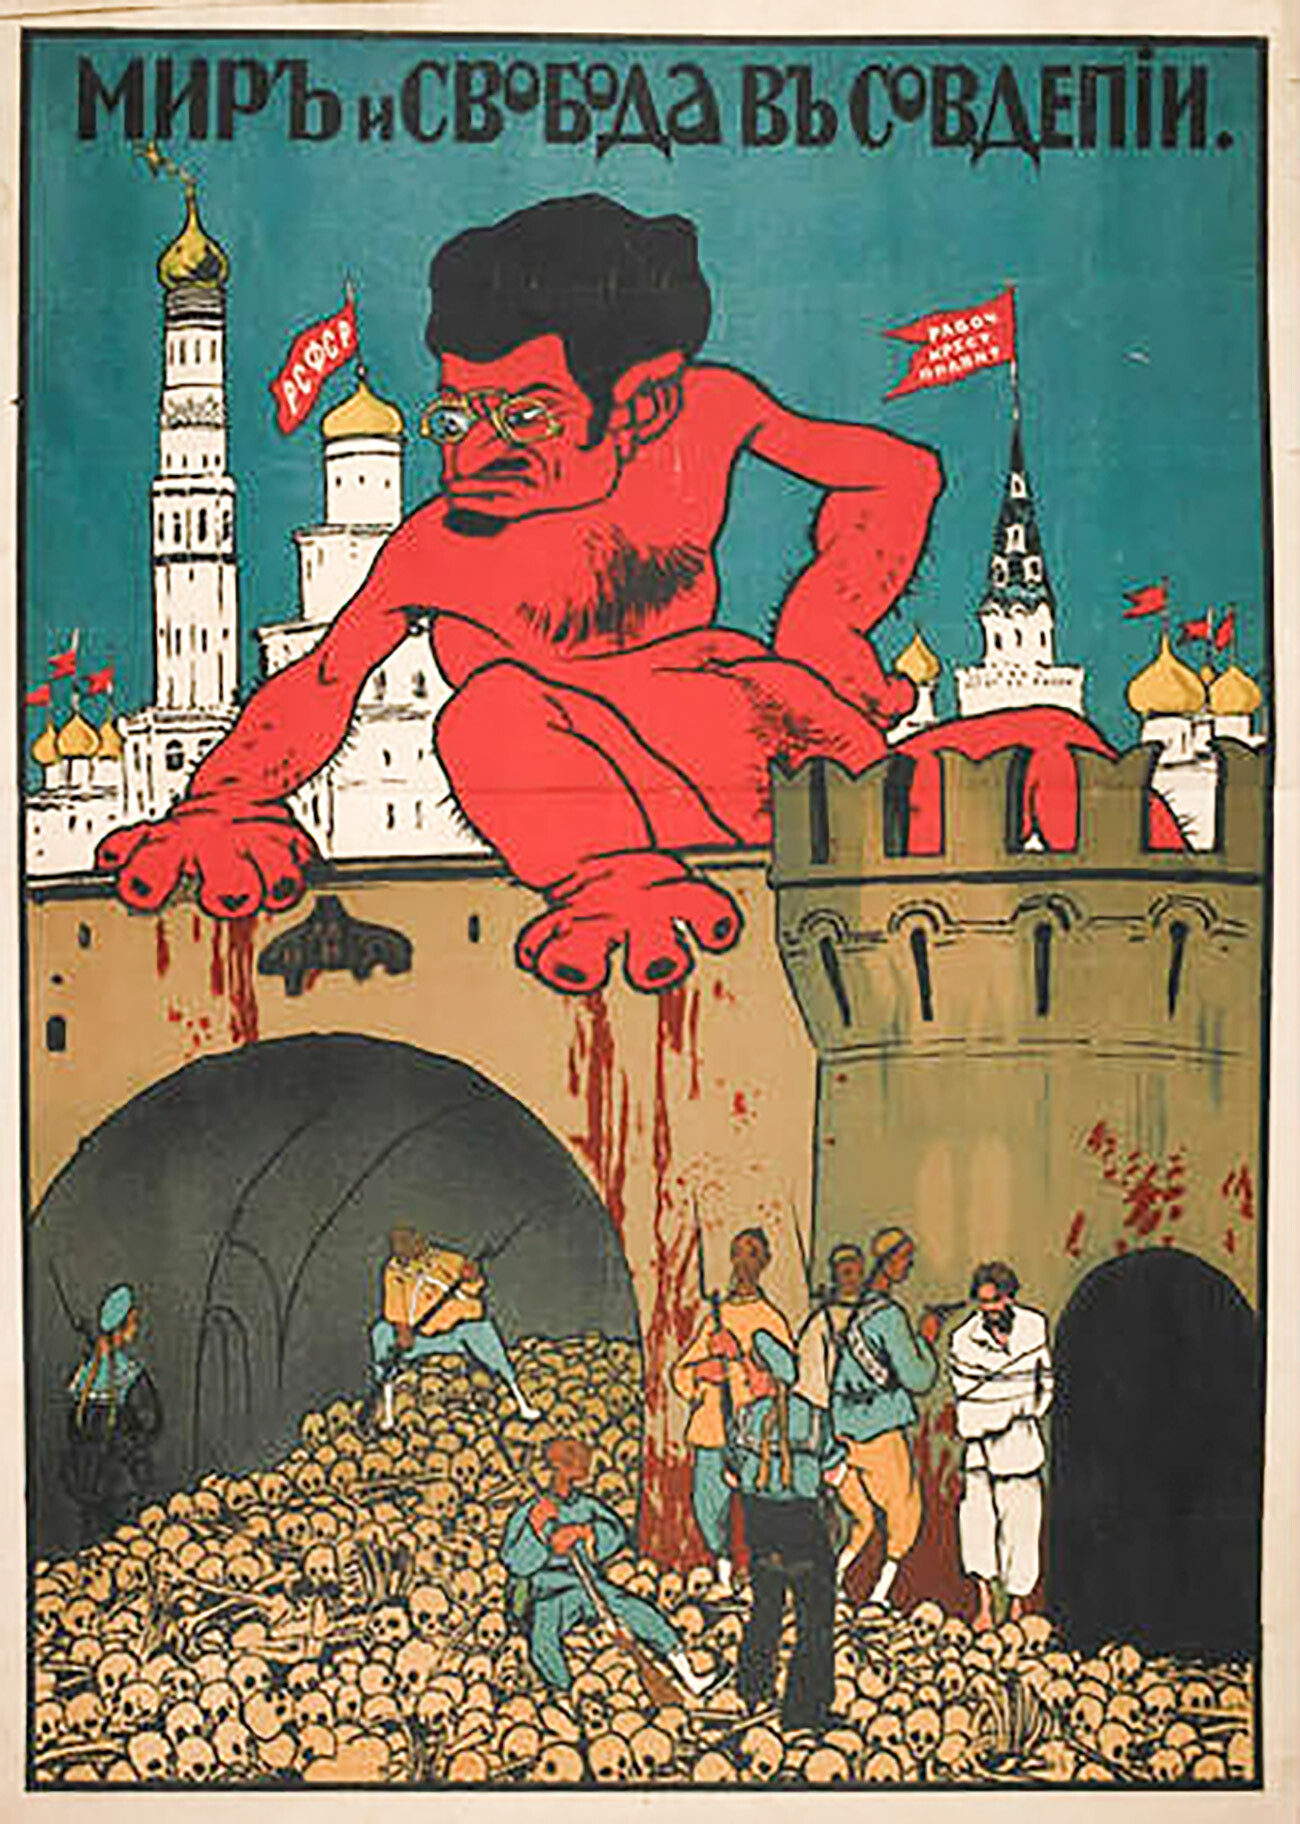 トロツキーを大衆の残忍な殺人者として描いた風刺画